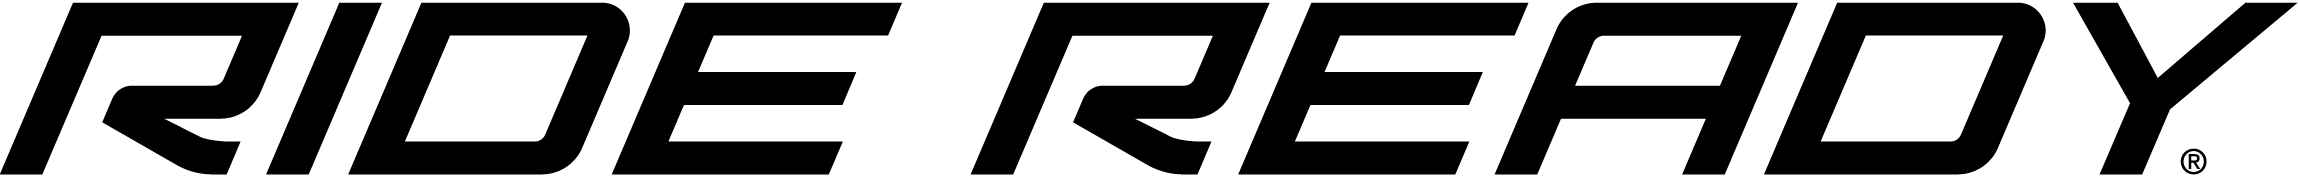 Logo associé